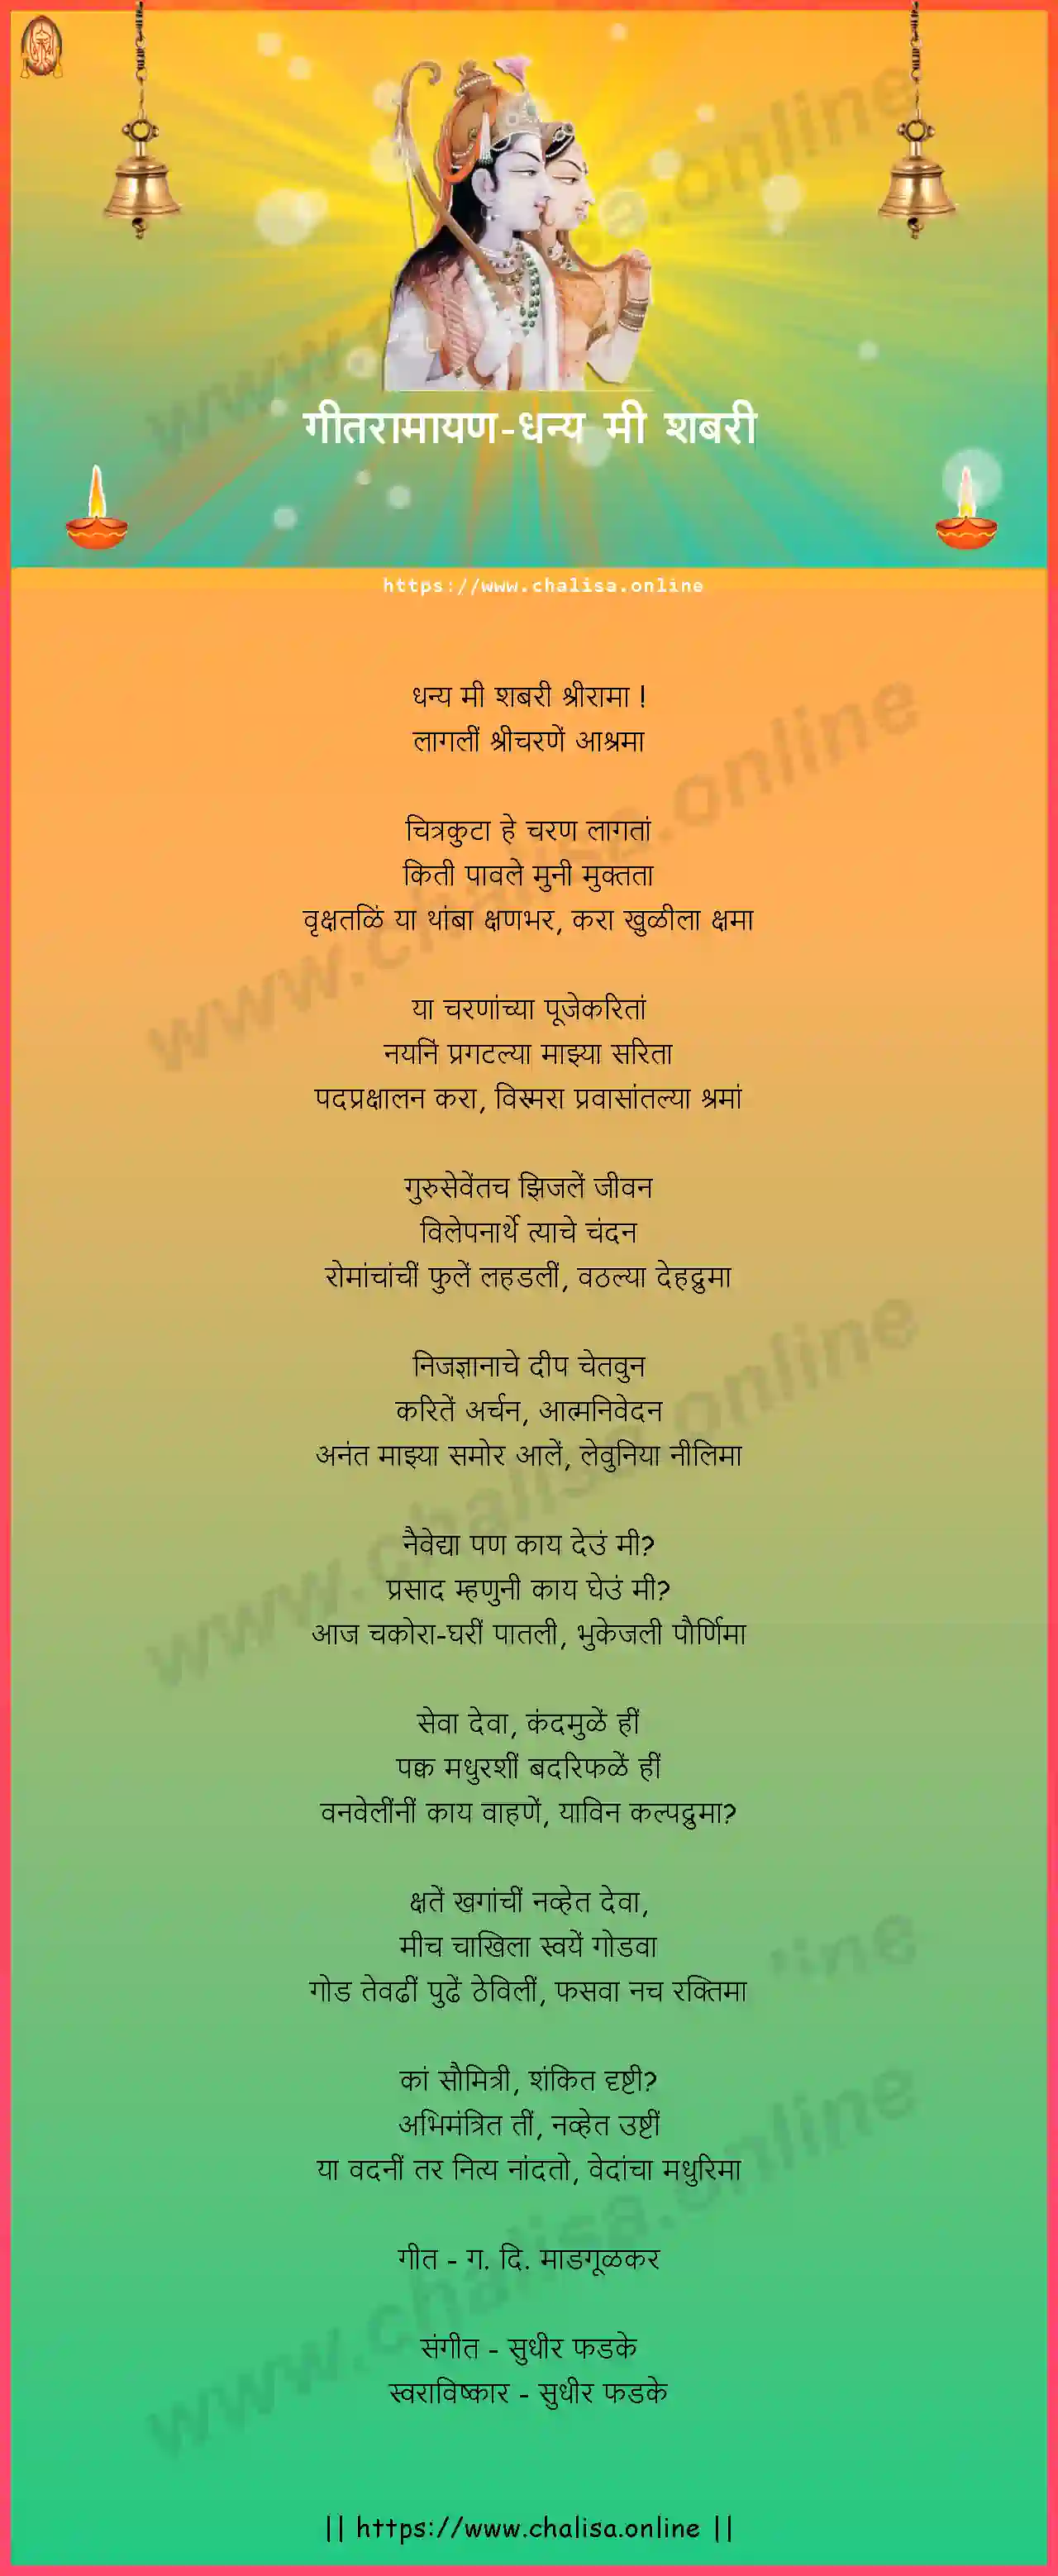 dhanya-mi-shabari-geet-ramayan-marathi-lyrics-download